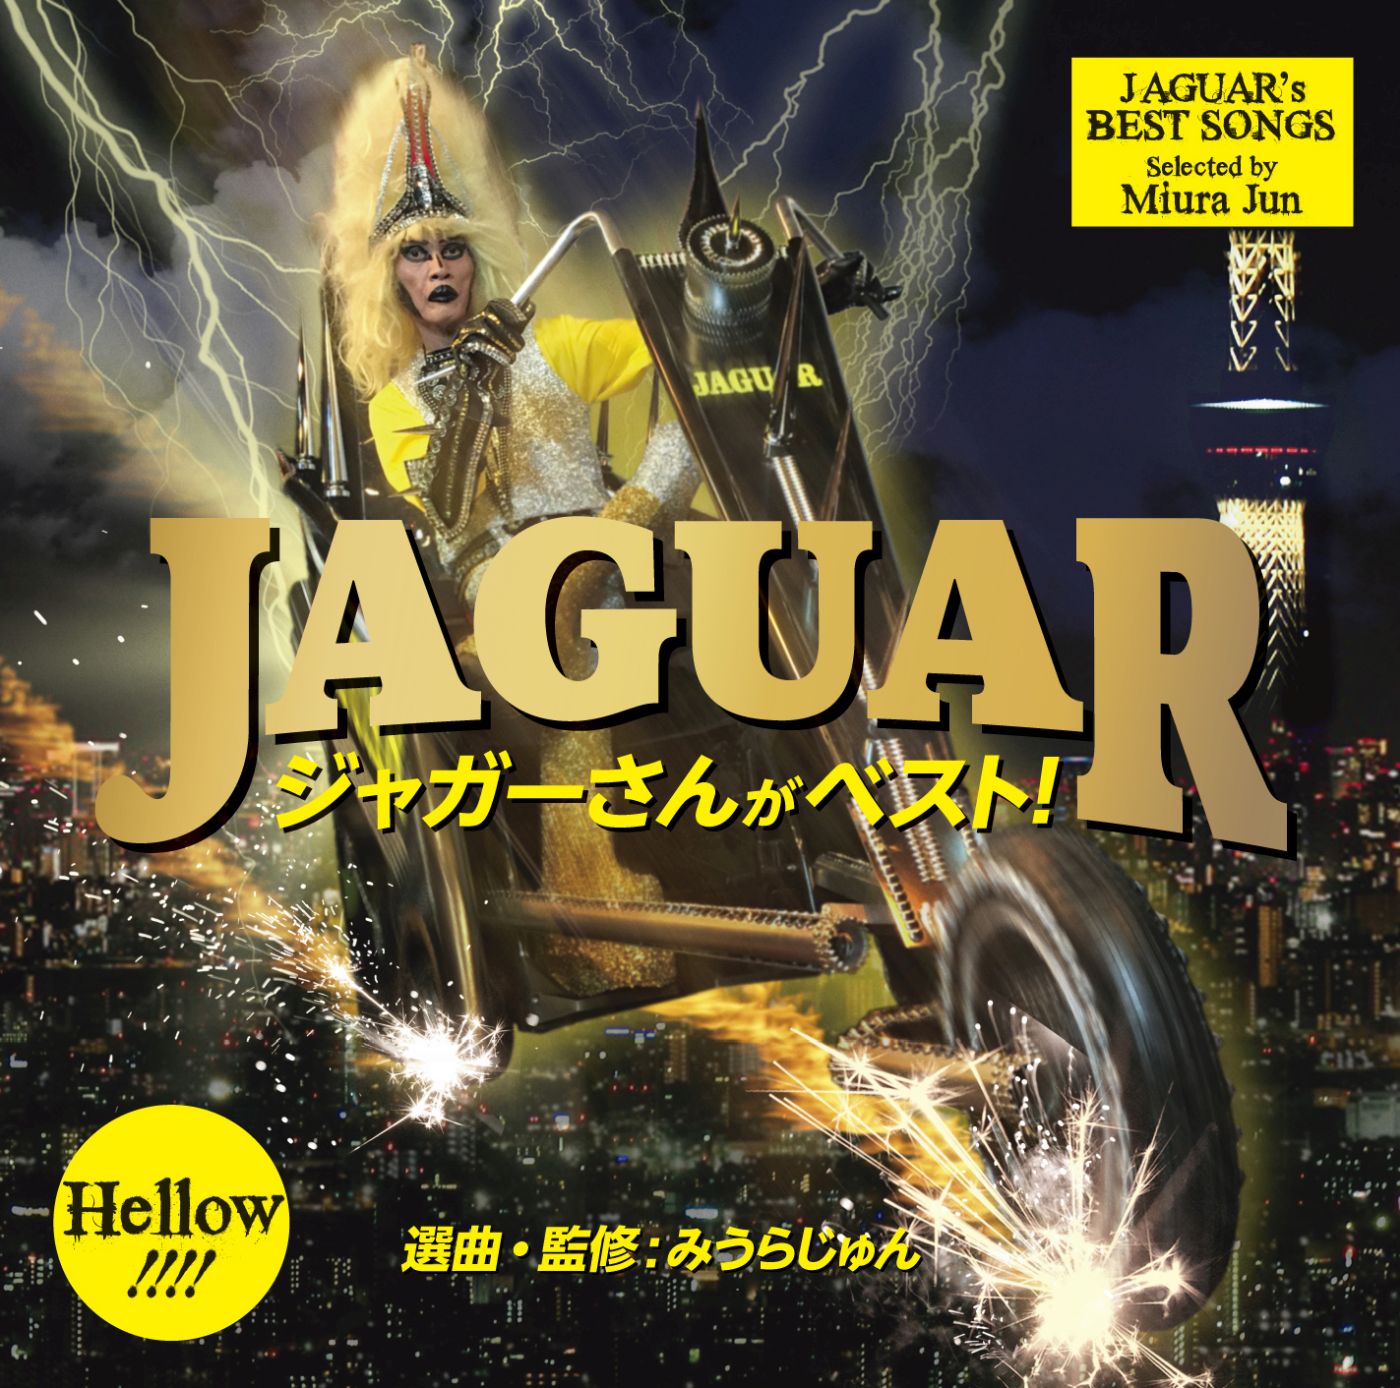 Jaguar ジャガーさんがベスト ある時は千葉のヒーロー ある時は日本ロック シーンの父 いま再ブレイク中のジャガーさんを直撃 Mikiki